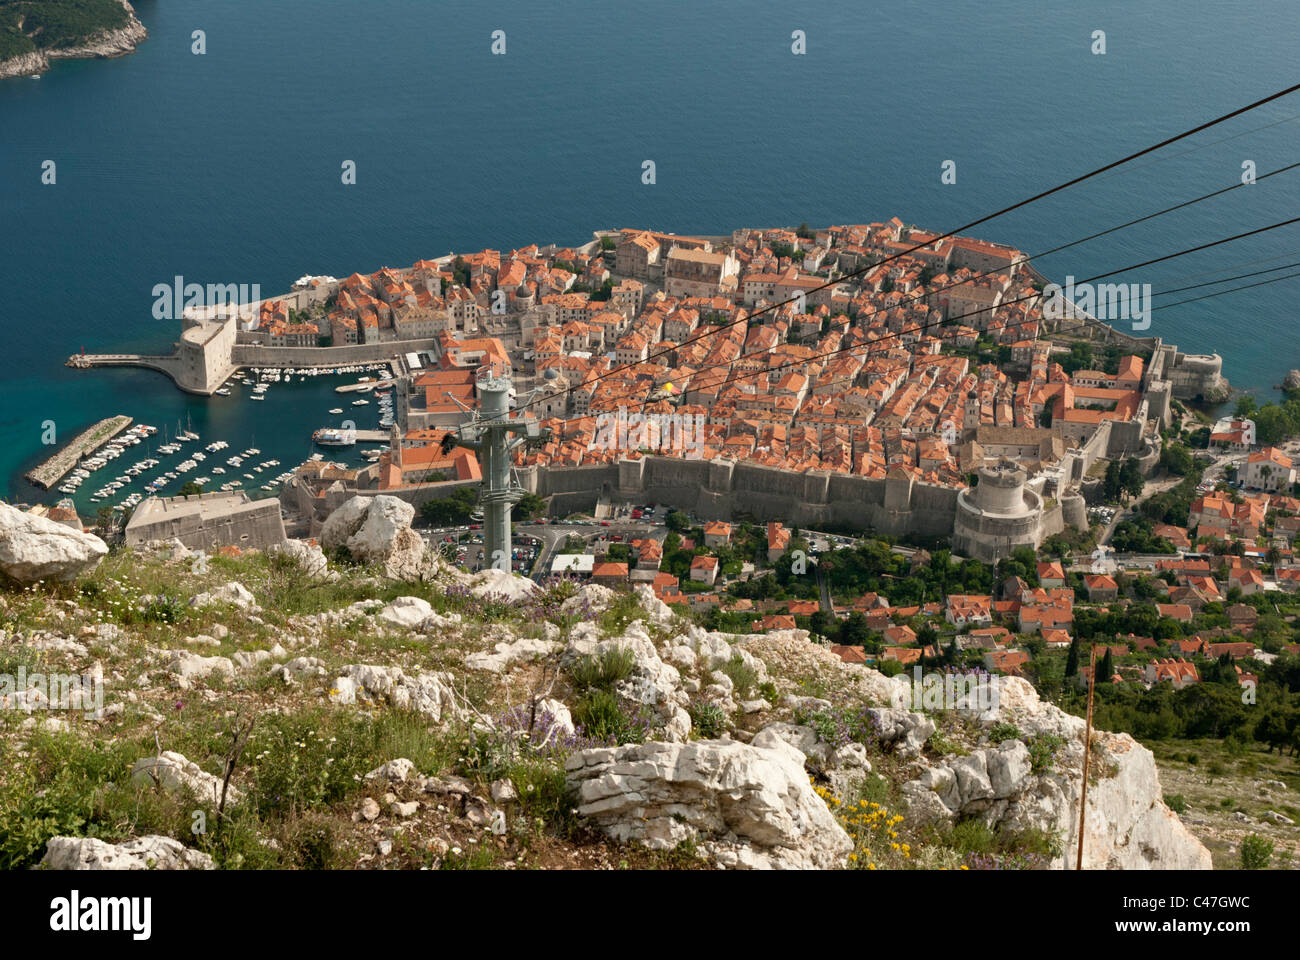 La vue sur la ville historique de Dubrovnik, Croatie à partir de la gare du téléphérique au sommet de Hil Srd. Banque D'Images